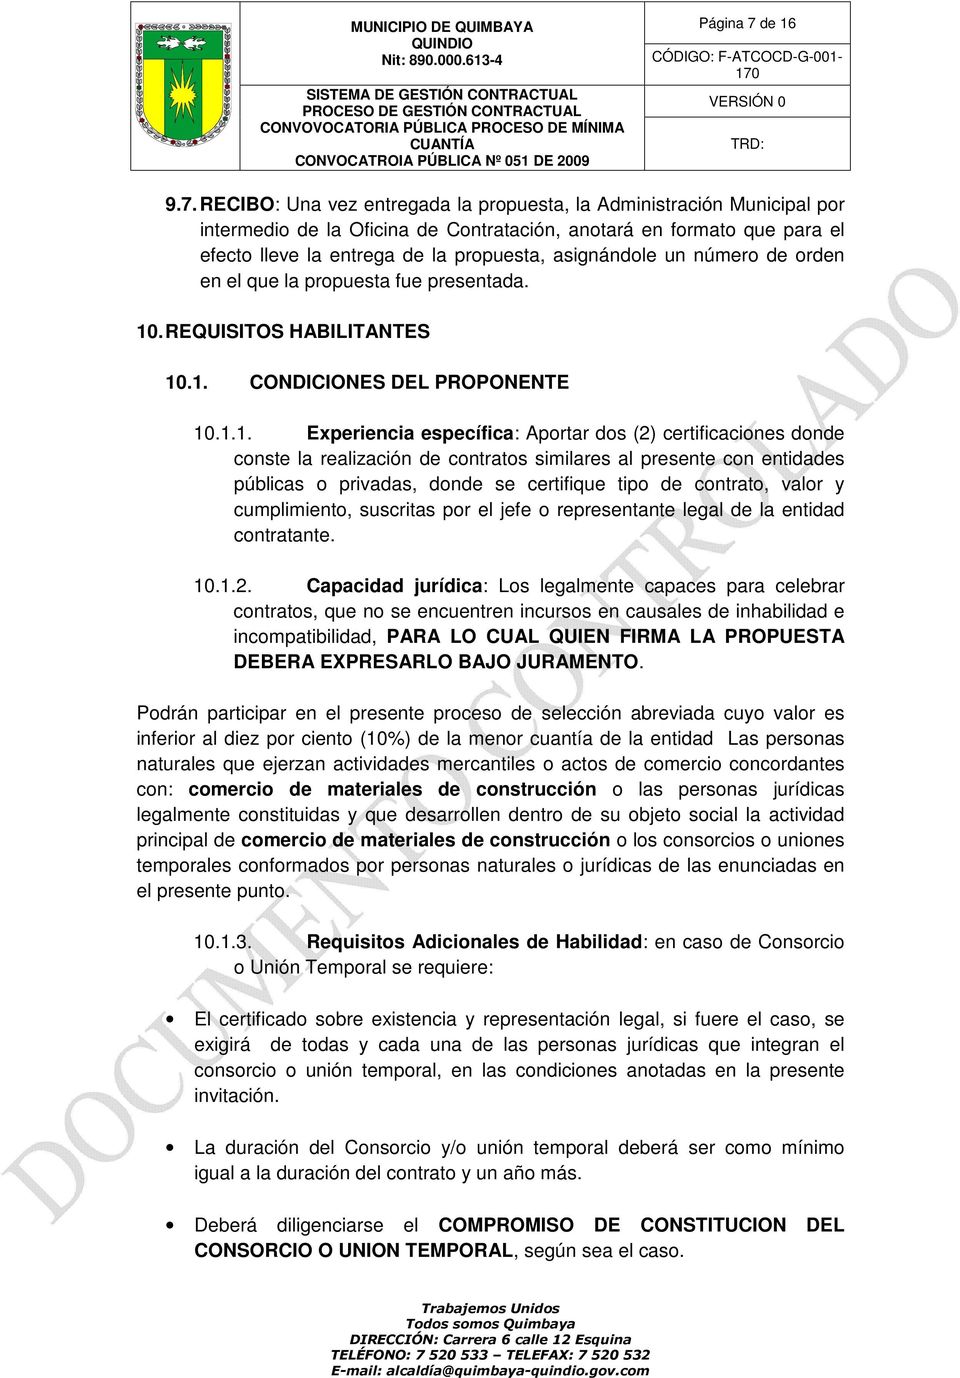 RECIBO: Una vez entregada la propuesta, la Administración Municipal por intermedio de la Oficina de Contratación, anotará en formato que para el efecto lleve la entrega de la propuesta, asignándole